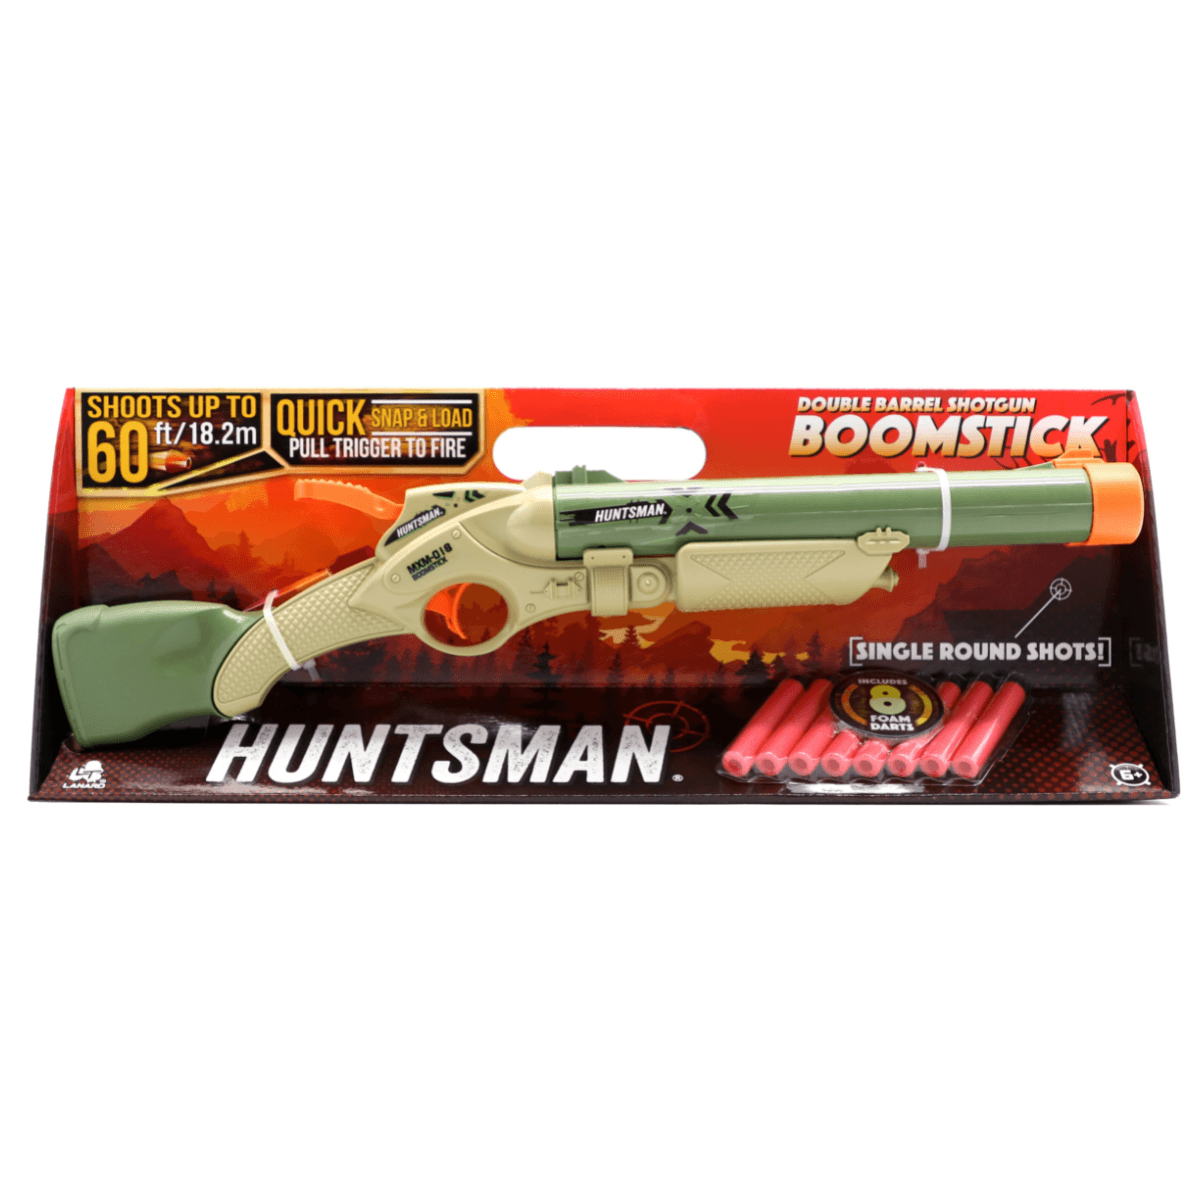 مسدس طلق اطفال 24 سهم هنتسمان Huntsman Boomstick